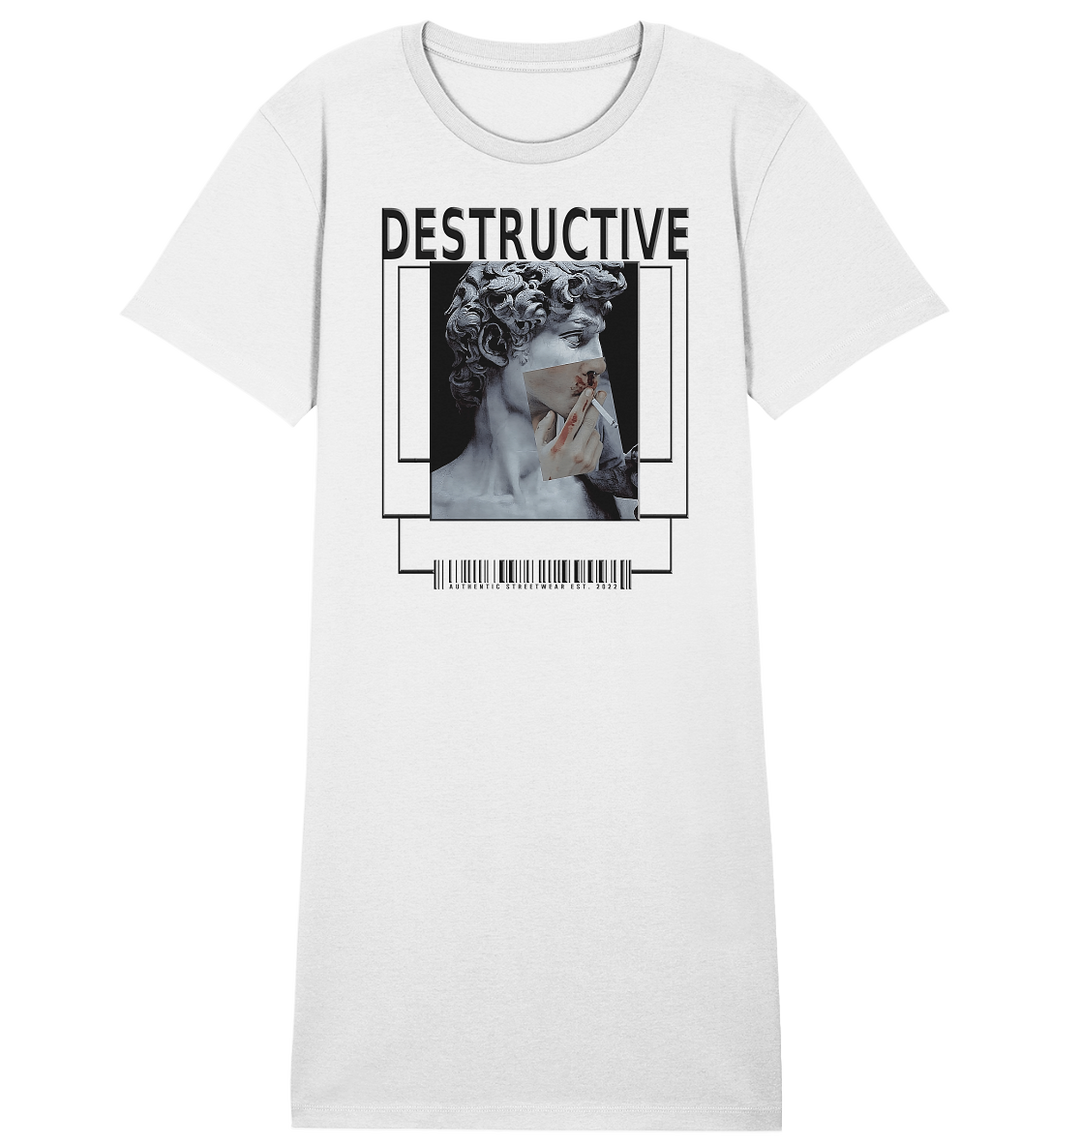 Destructive Shirt Dress